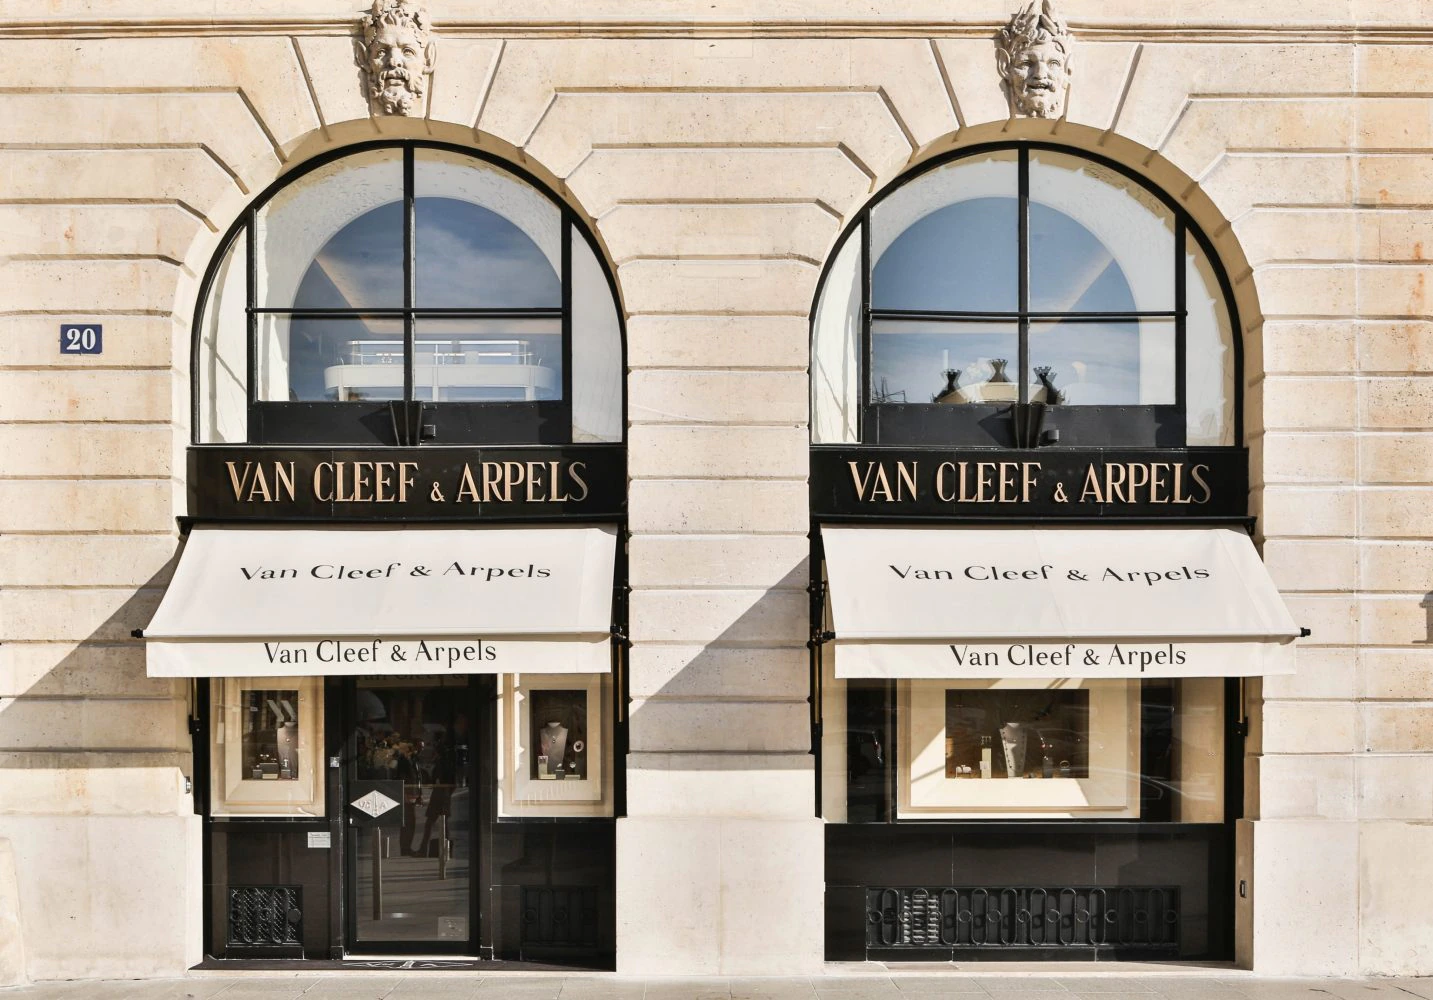 Căn nhà số 20 Place Vendôme của Van Cleef & Arpels